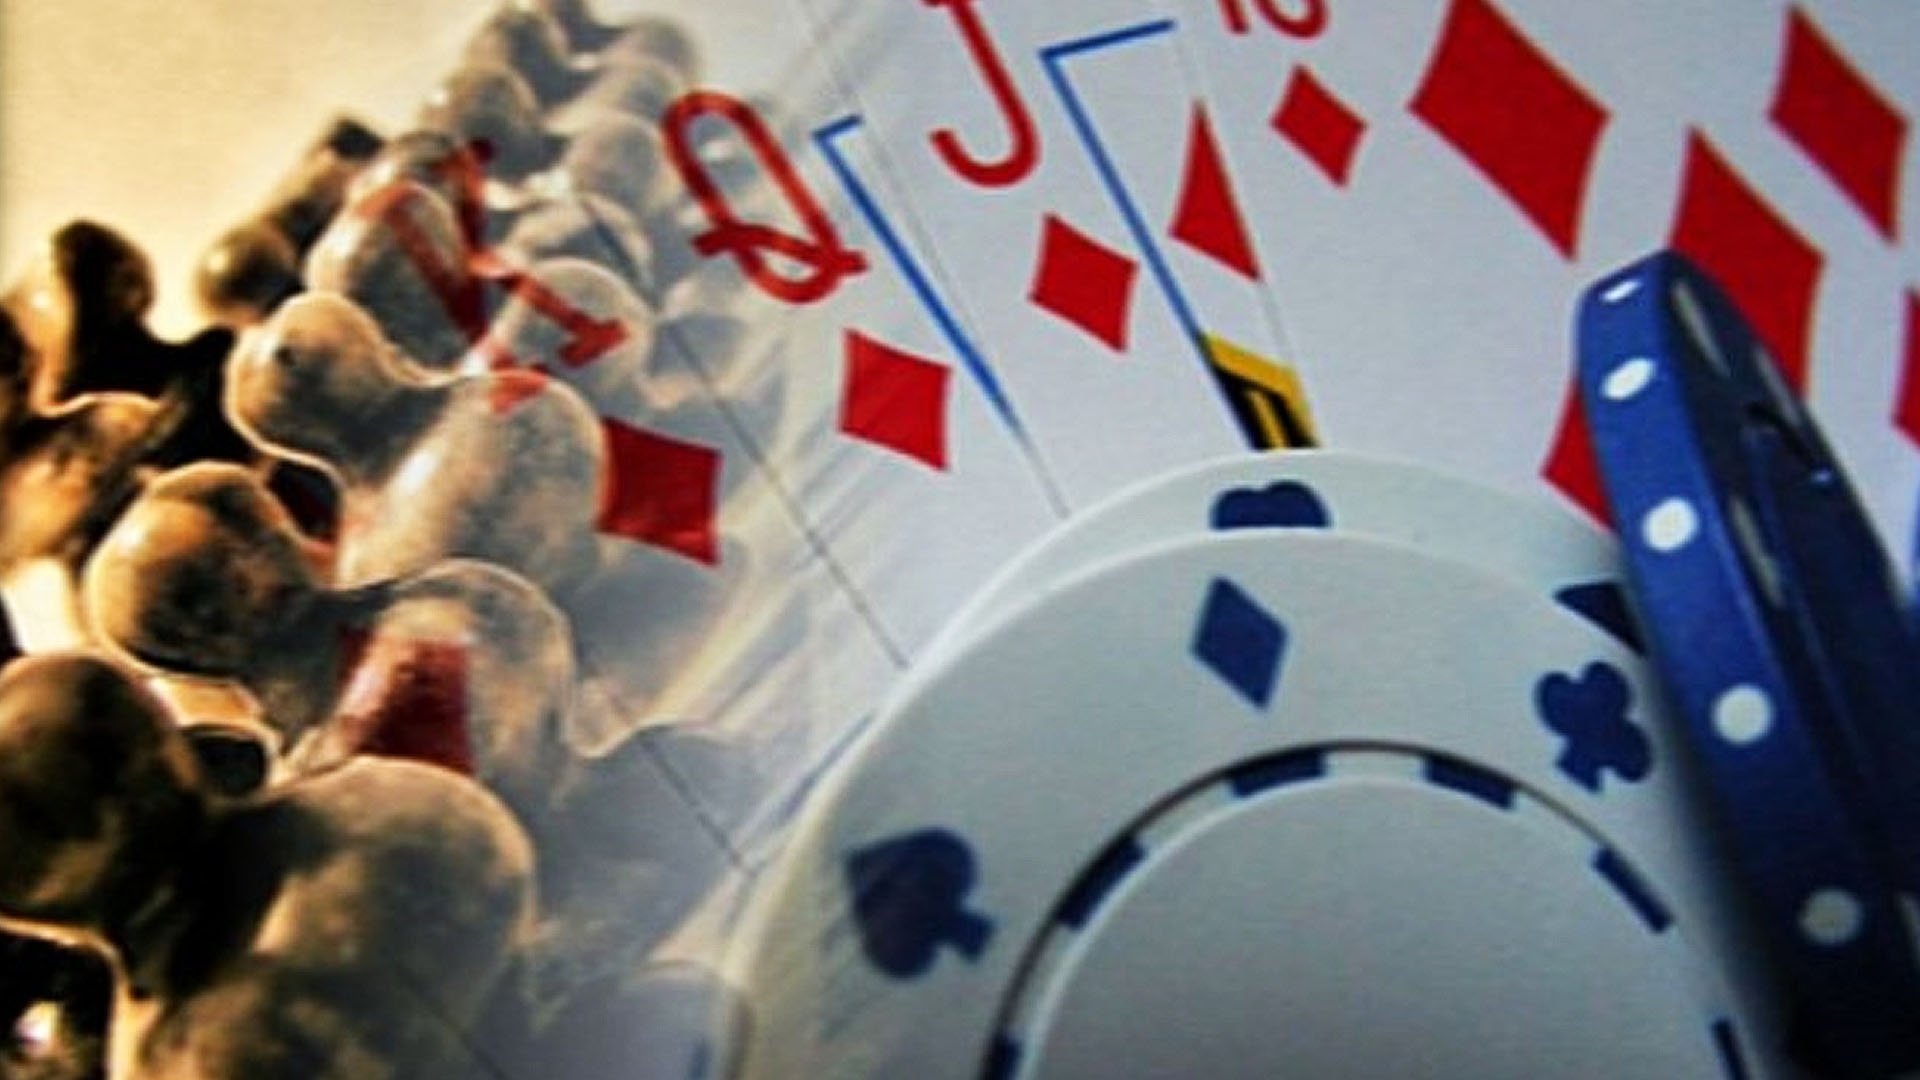 Anastra - Os jogos de tabuleiro, como damas, xadrez e dominó, são  modalidades levadas à sério na Olimpíada Nacional da Justiça do Trabalho  (ONJT). As competições acontecem entre atletas de todo o